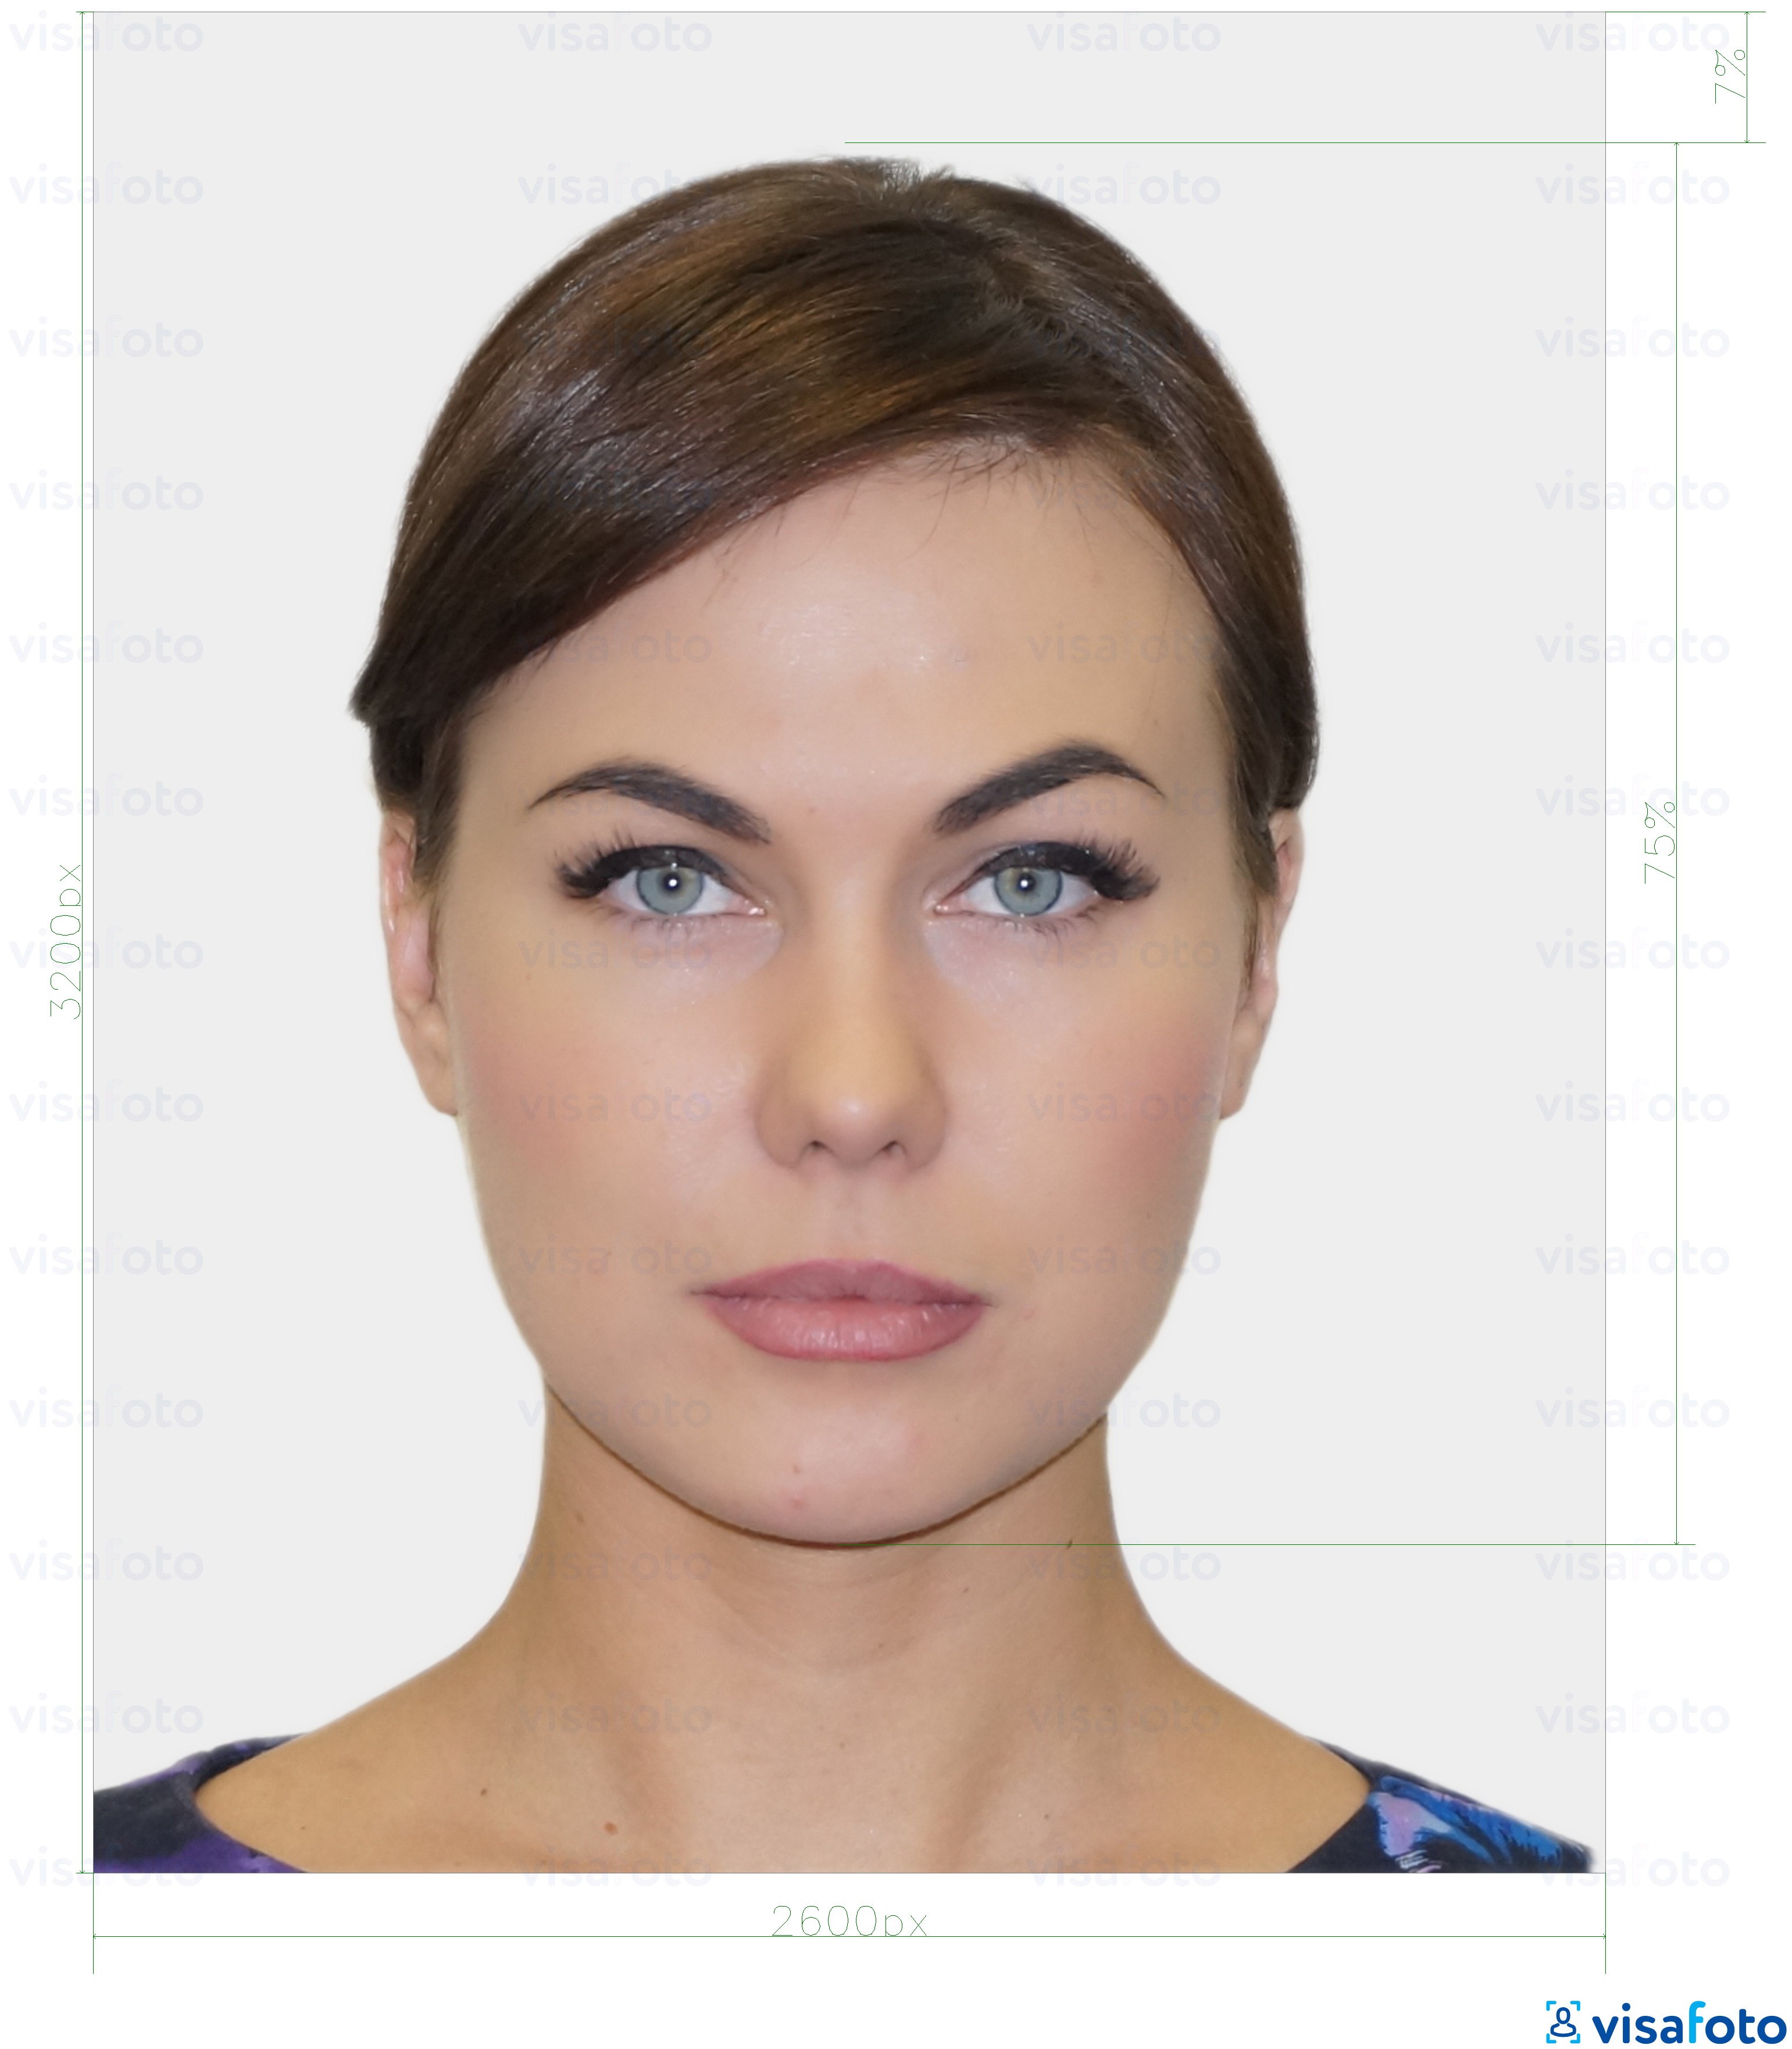 Ejemplo de foto para Tarjeta de identidad digital residente de Estonia 1300x1600 píxeles con la especificación del tamaño exacto